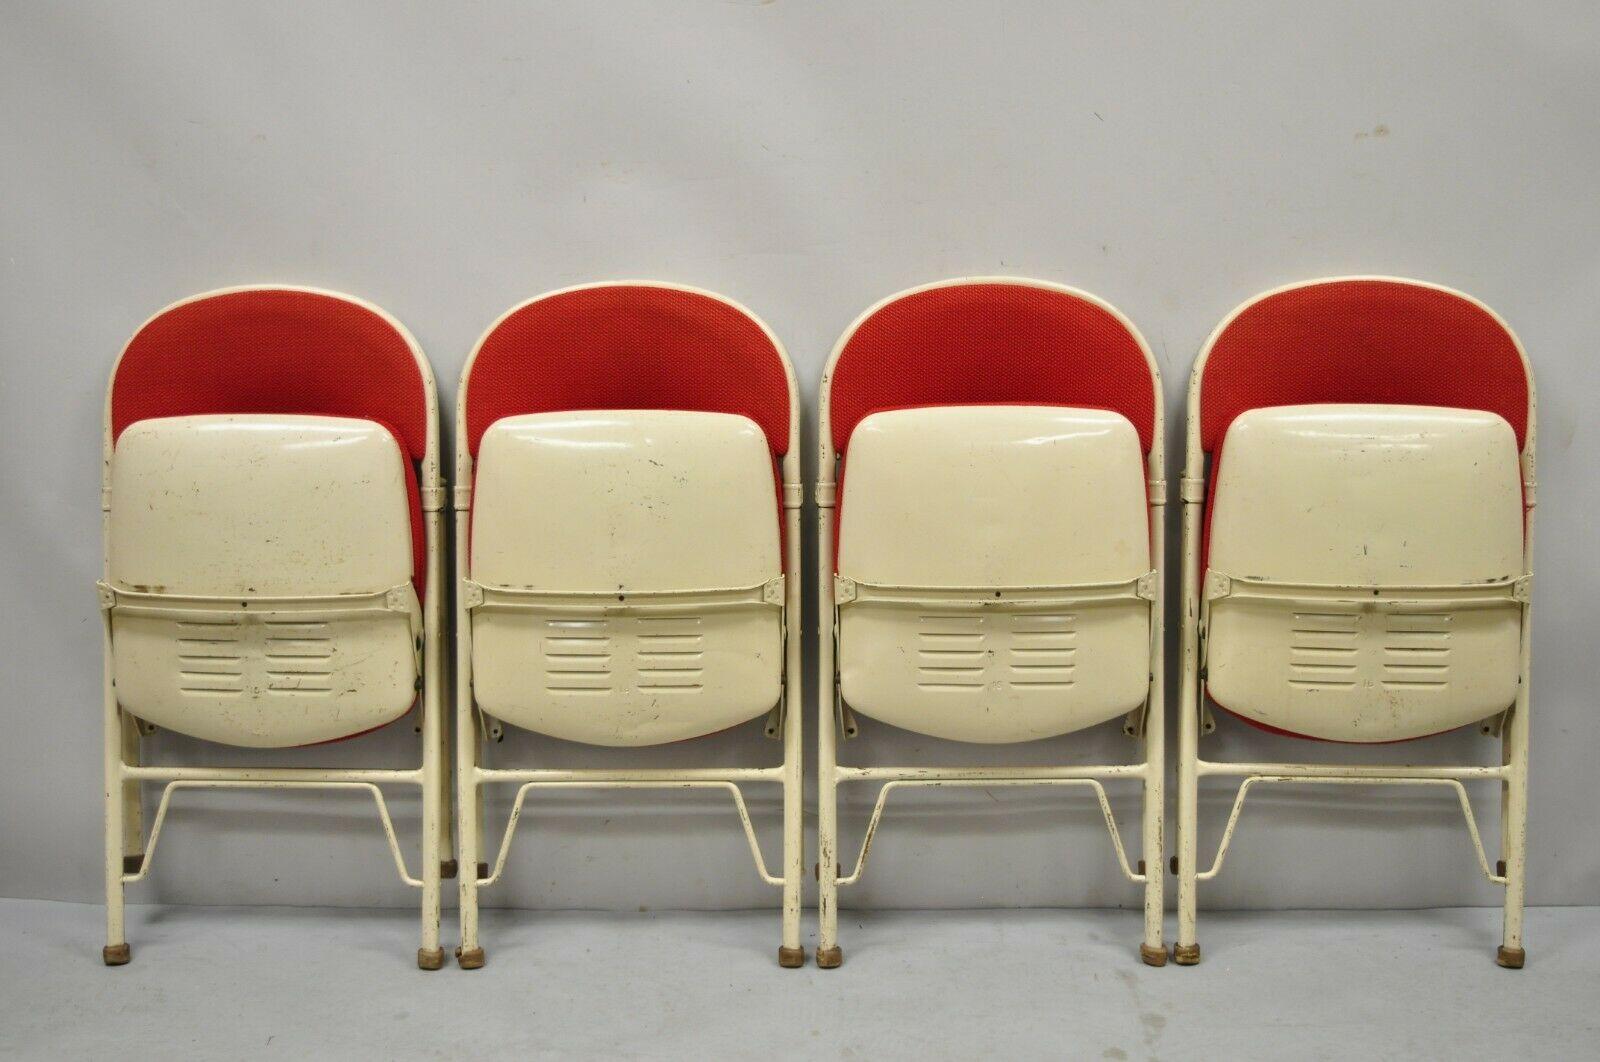 Lot de 4 chaises pliantes, châssis en métal unique, rembourrage rouge d'origine, étiquette d'origine, très bel ensemble vintage, qualité artisanale américaine, style et forme superbes. Vers le milieu du 20e siècle. Dimensions : Ouvert : 31